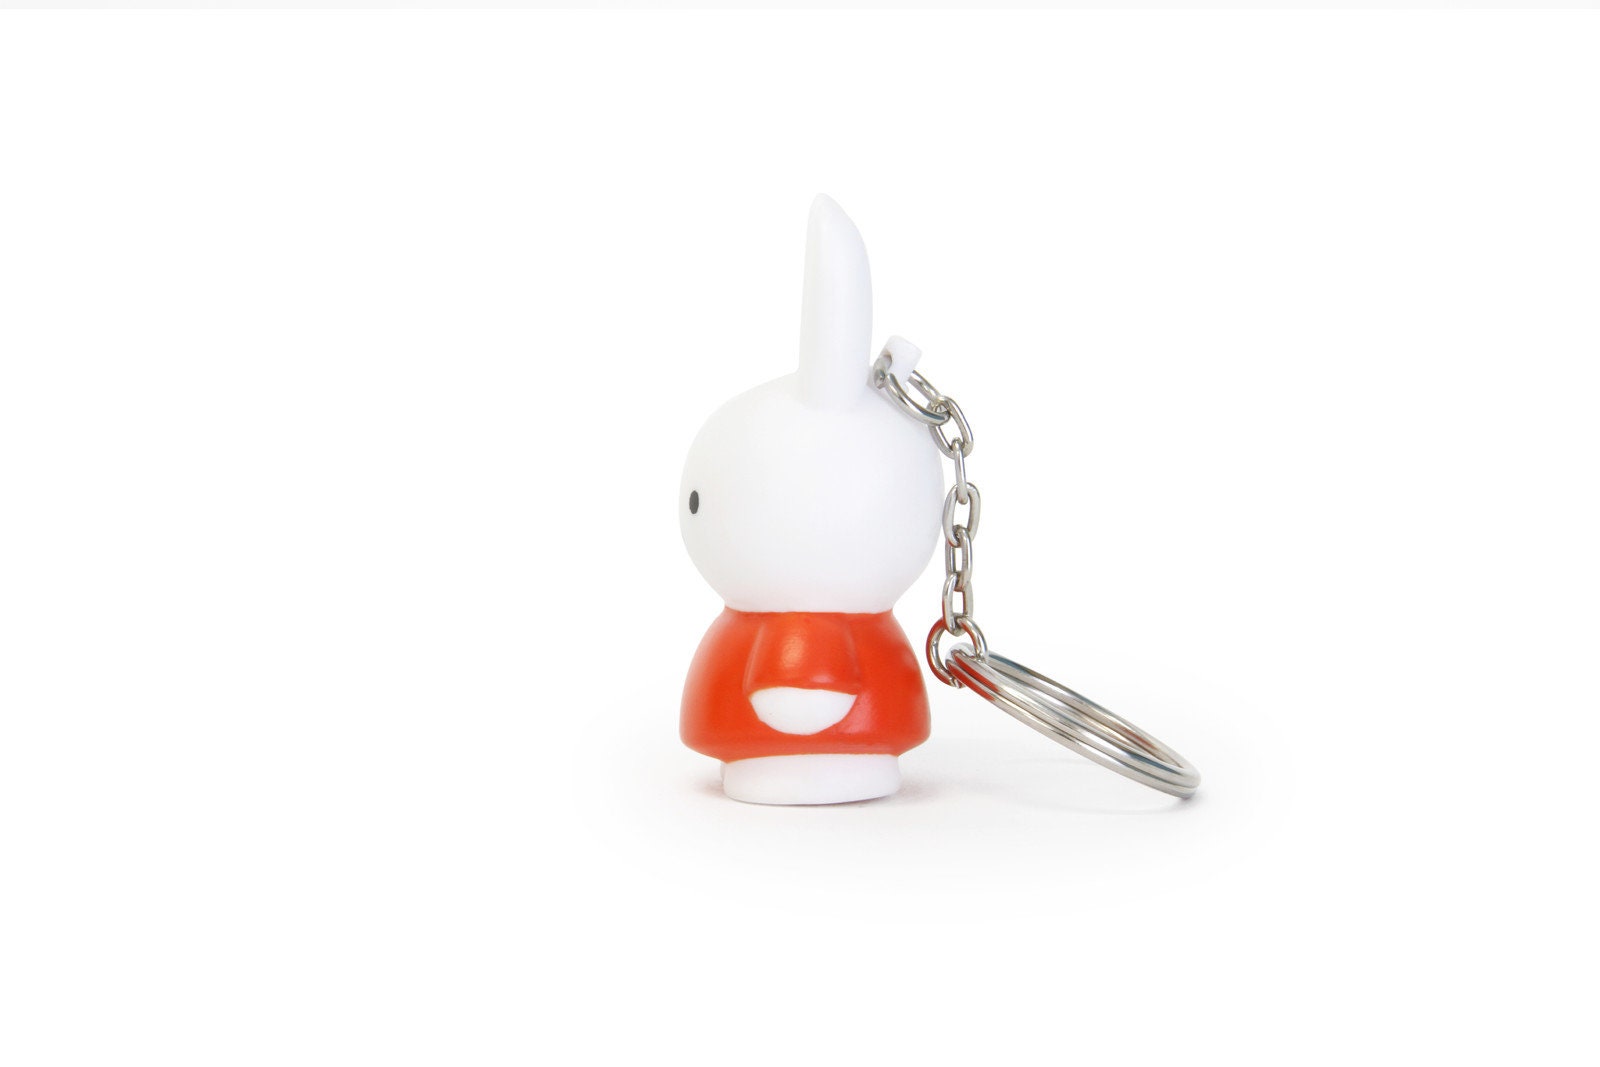 yolkcakescrafts Miffy Bunny Handmade Keychain Beaded Bag Charm | Customizable Bag Charm